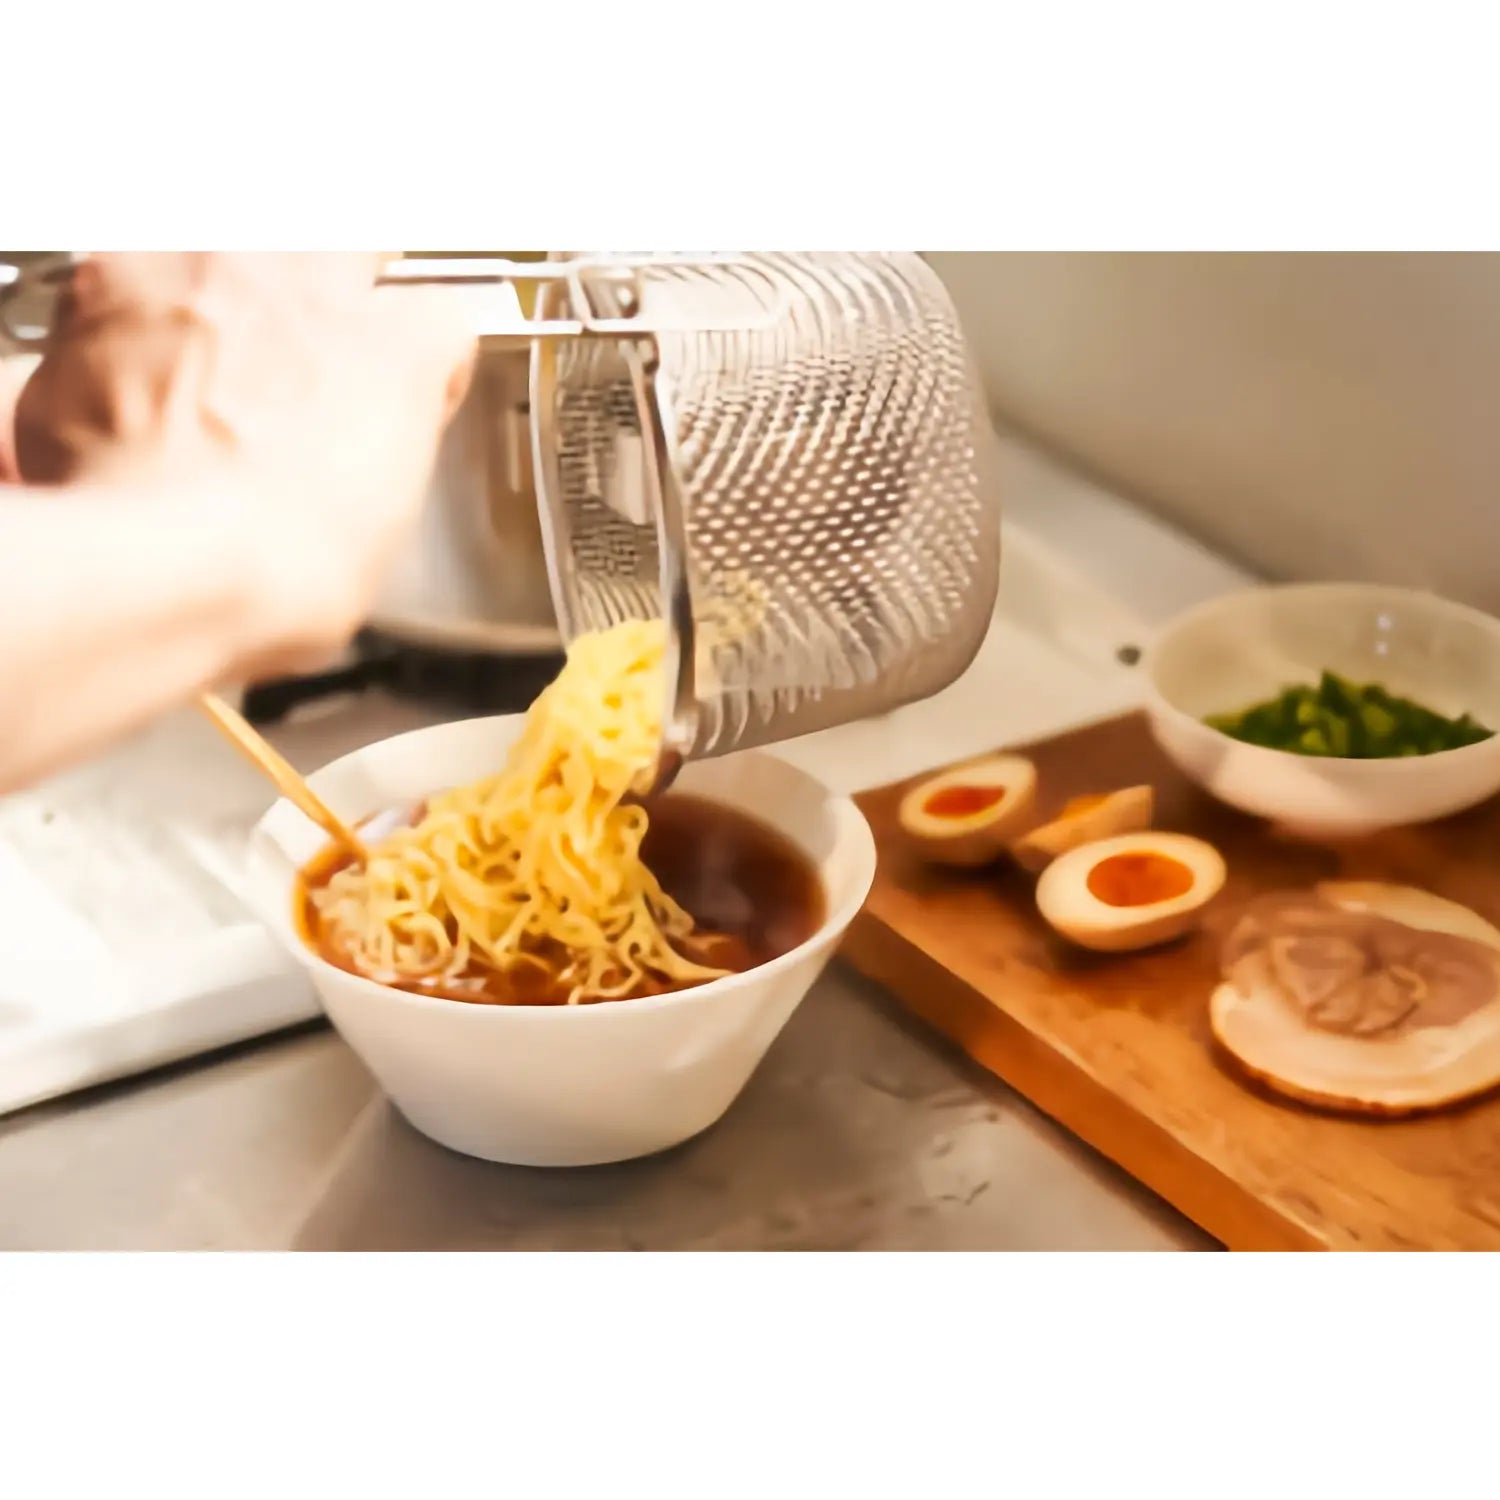 Tebo Noodle Strainer  RVS Strainer Basket For Cooking Ramen Noodles